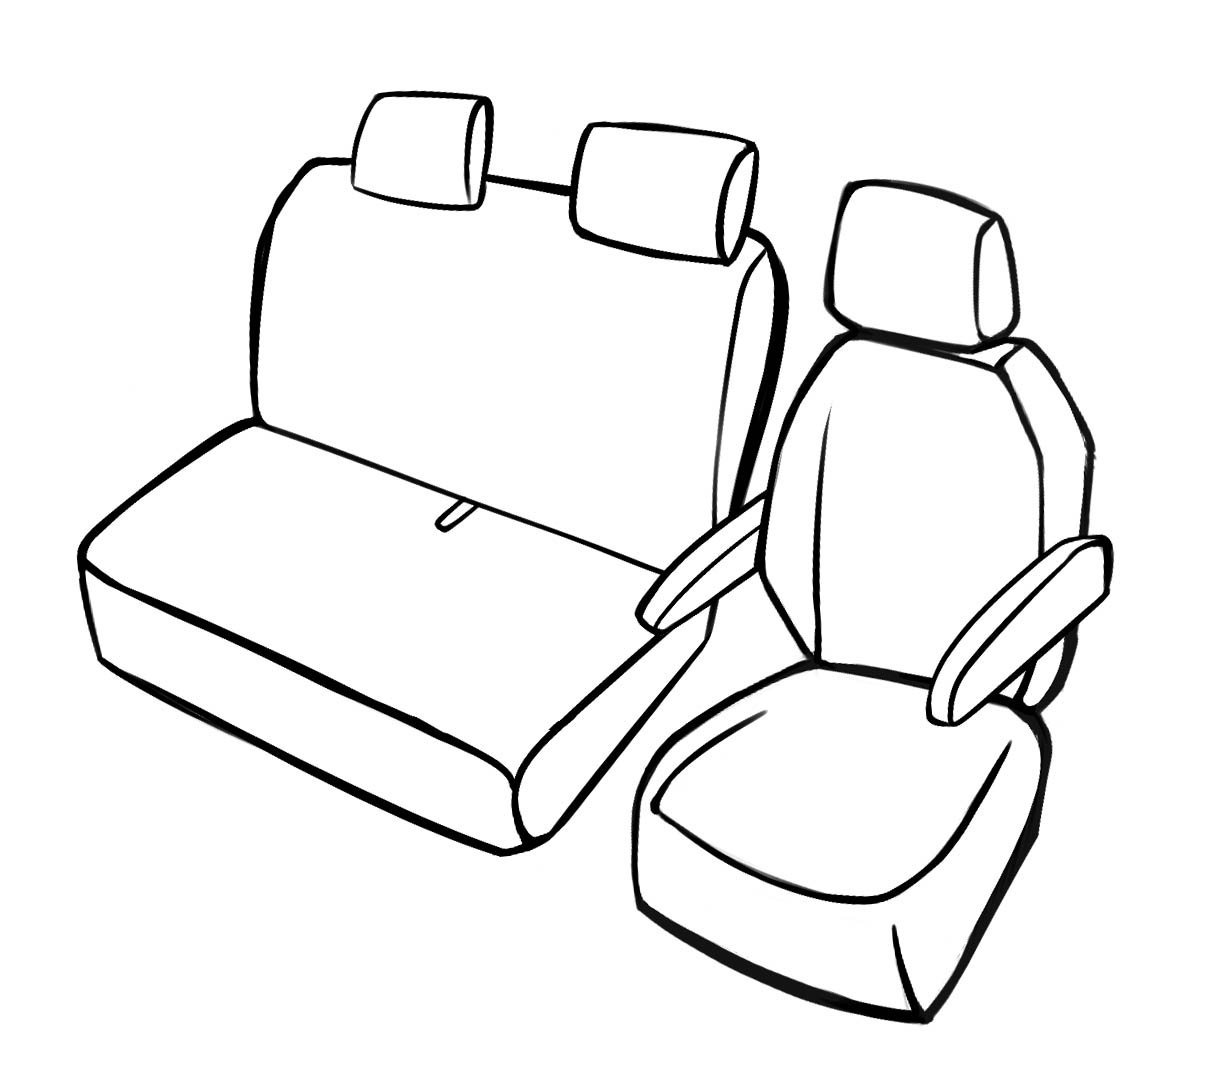 Premium auto stoelhoezen compatibel met VW T5 enkele zit voor en dubbele bank in kunstleder van bouwjaar 2003 - 2015